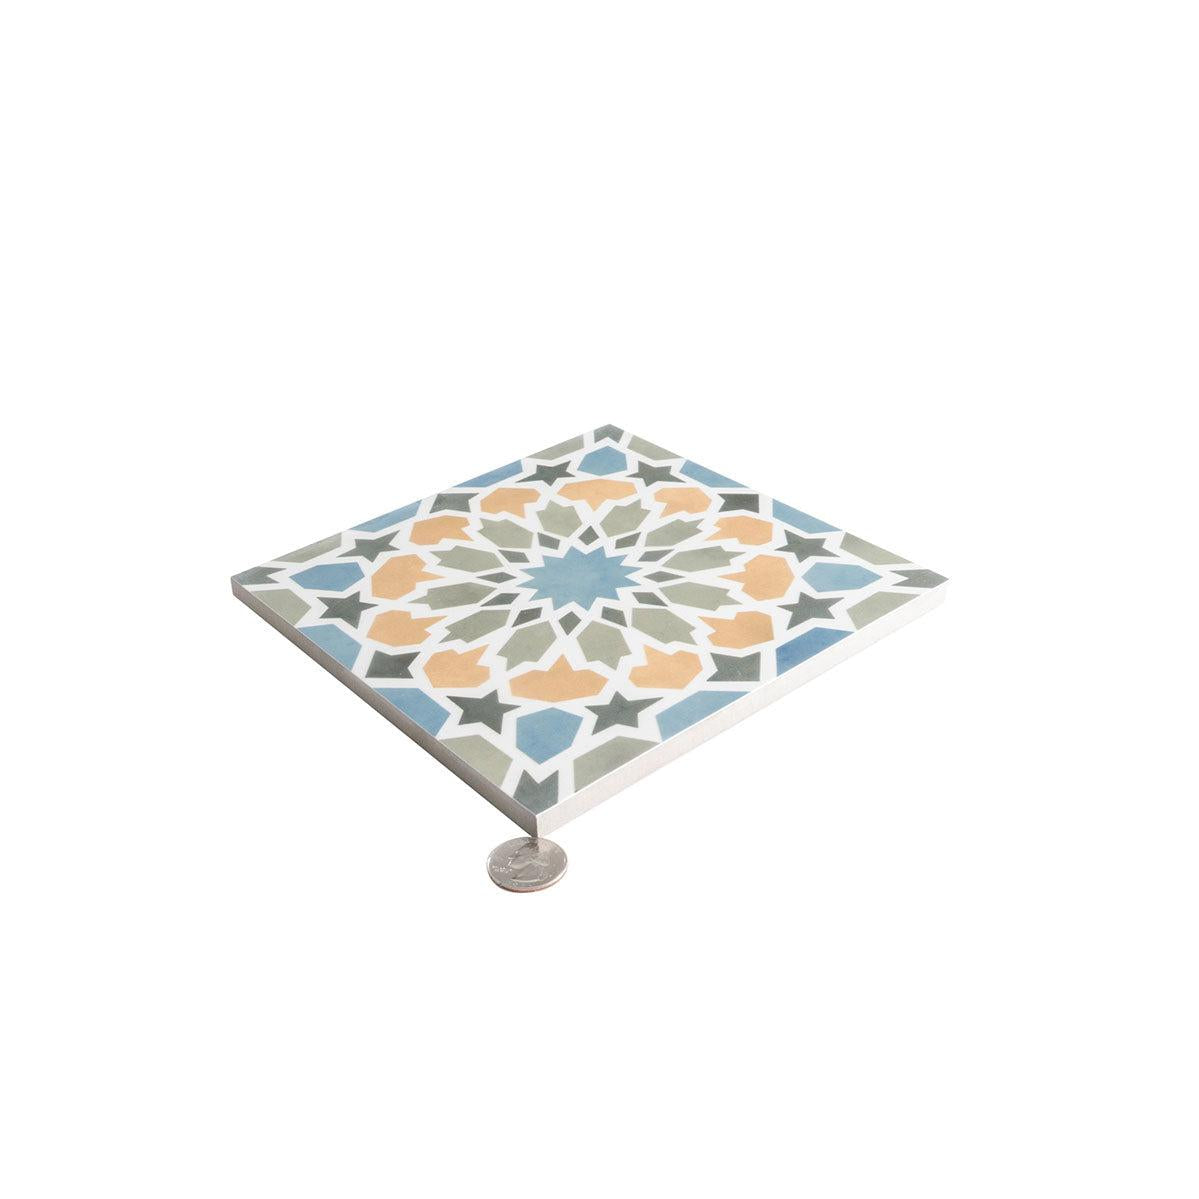 Amira Multicolor Patterned Porcelain Tile